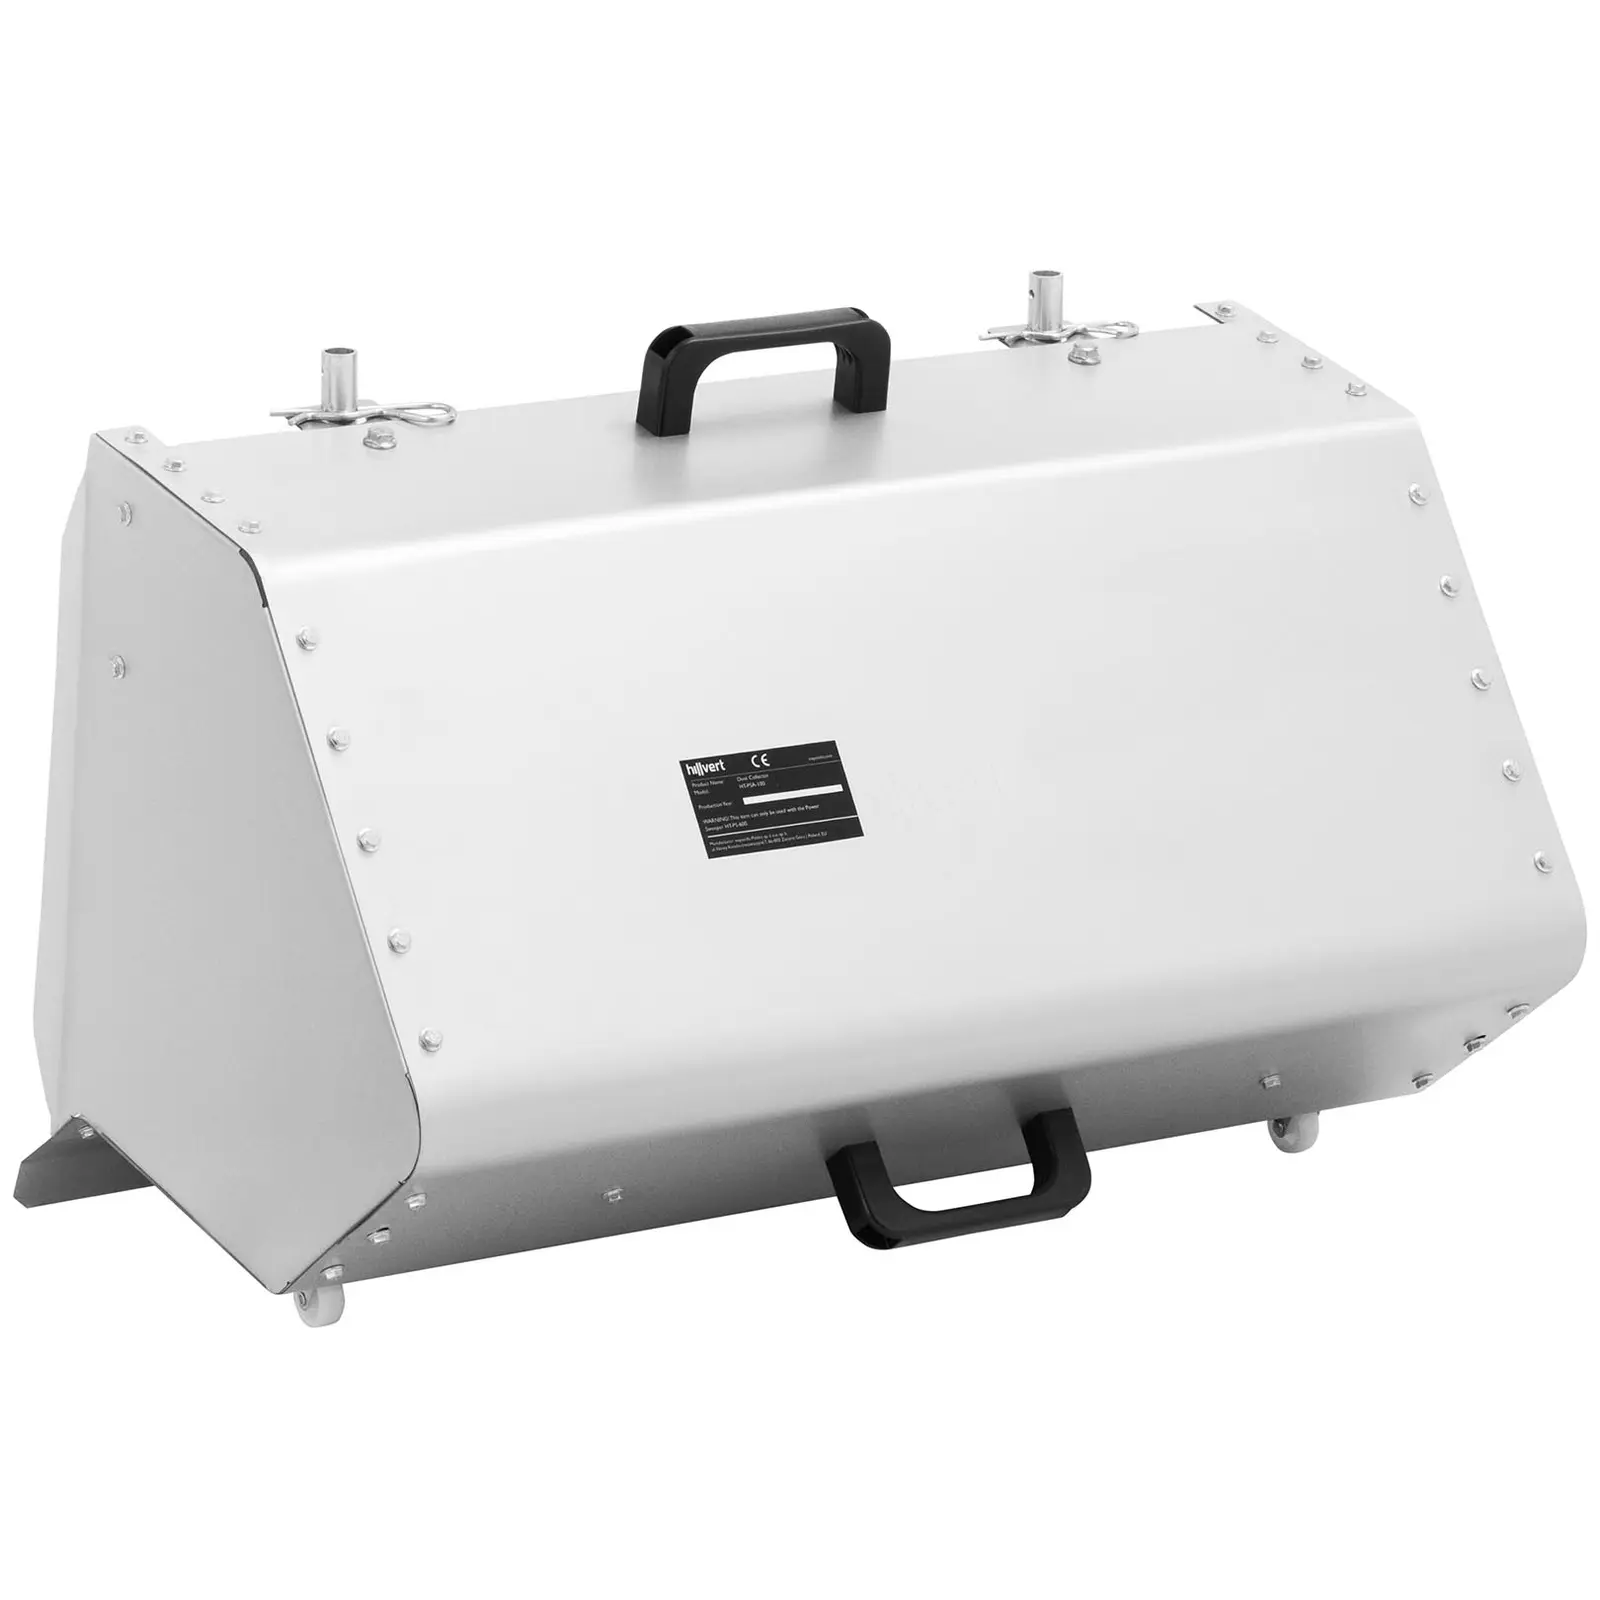 Contenitore polvere - 65 x 45 x 40 cm - Per spazzatrice HT-PS-600